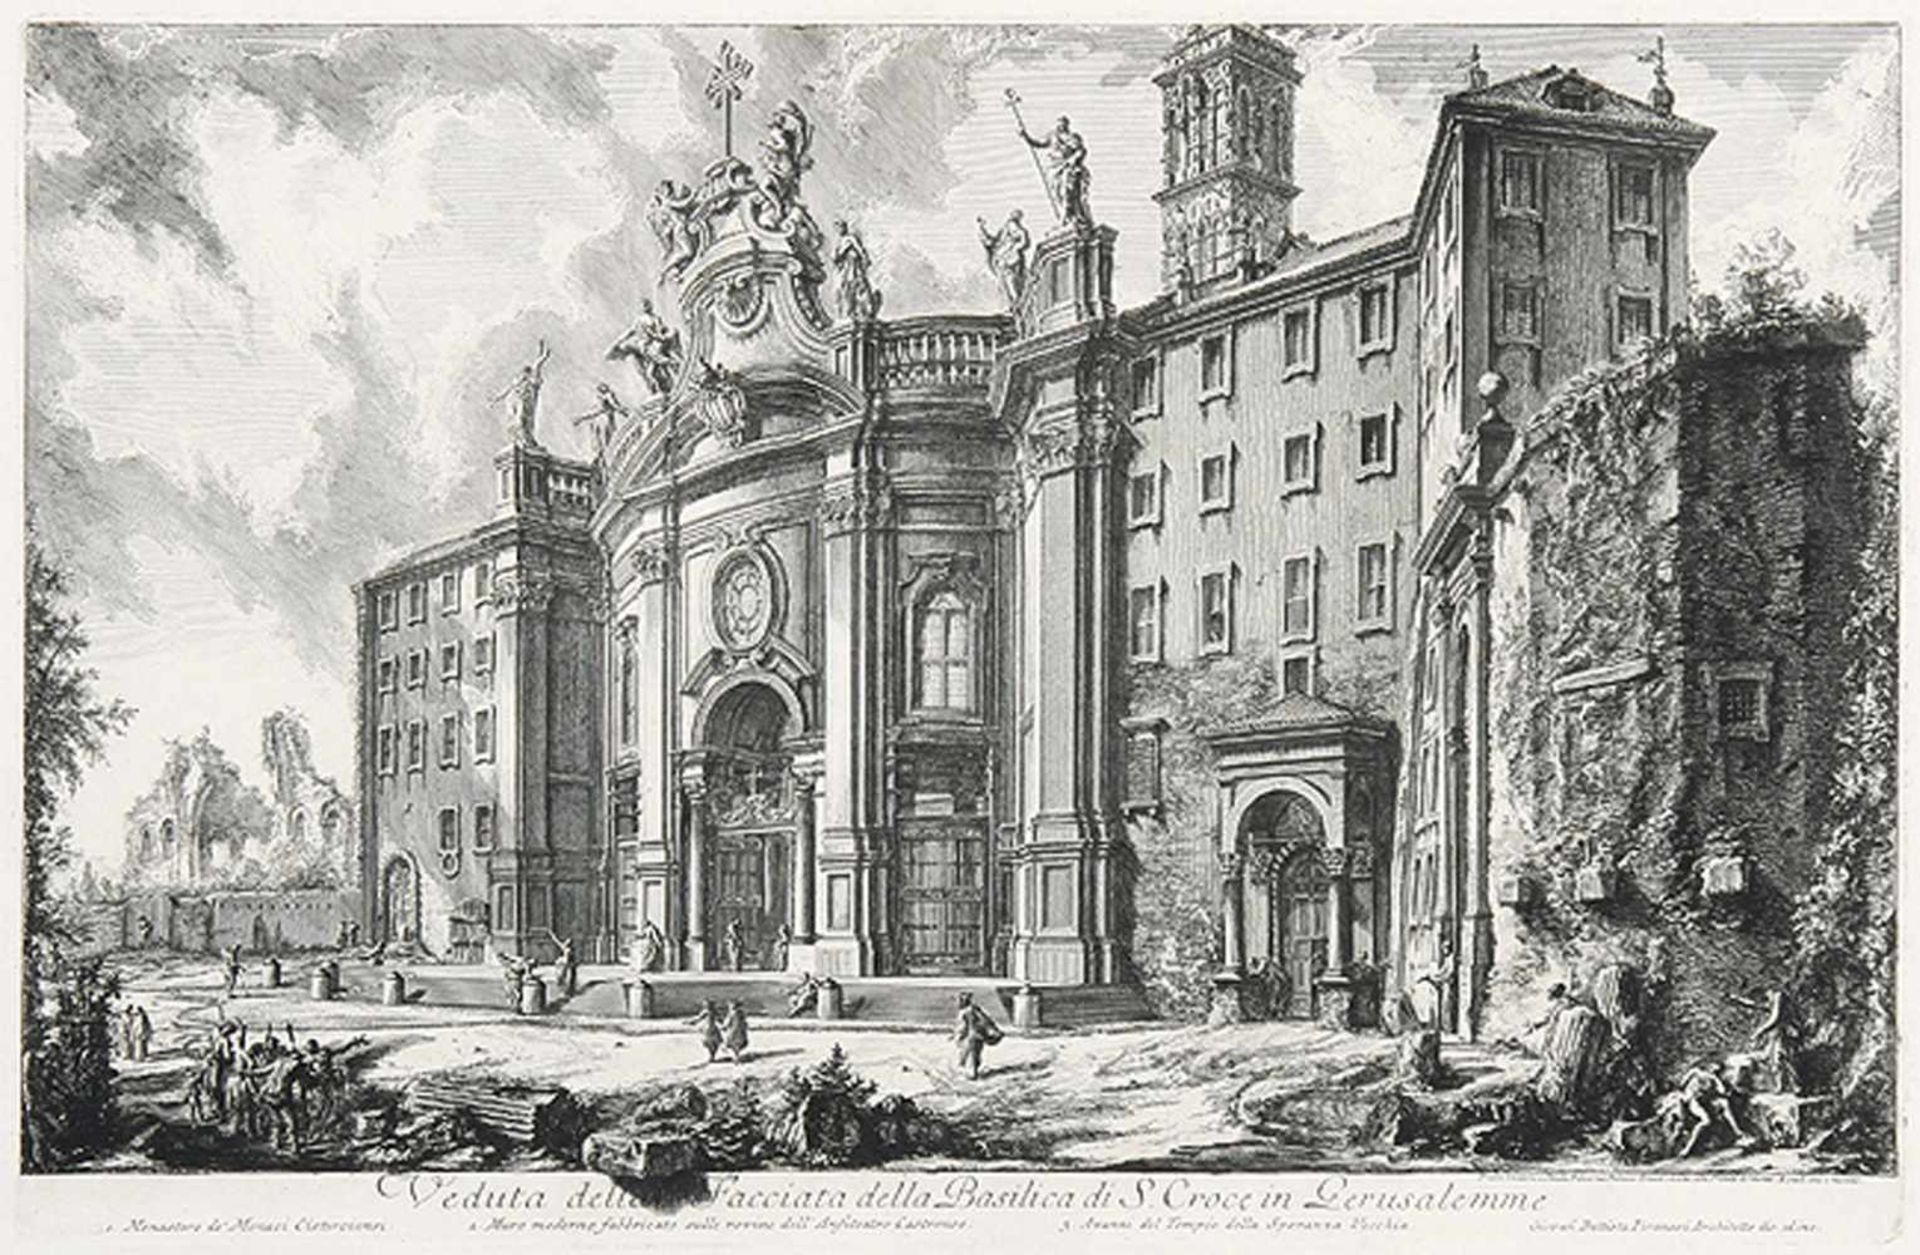 GIOVANNI BATTISTA PIRANESI Mogliano 1720 - 1778 RomVeduta della Facciata della Basilica di S.